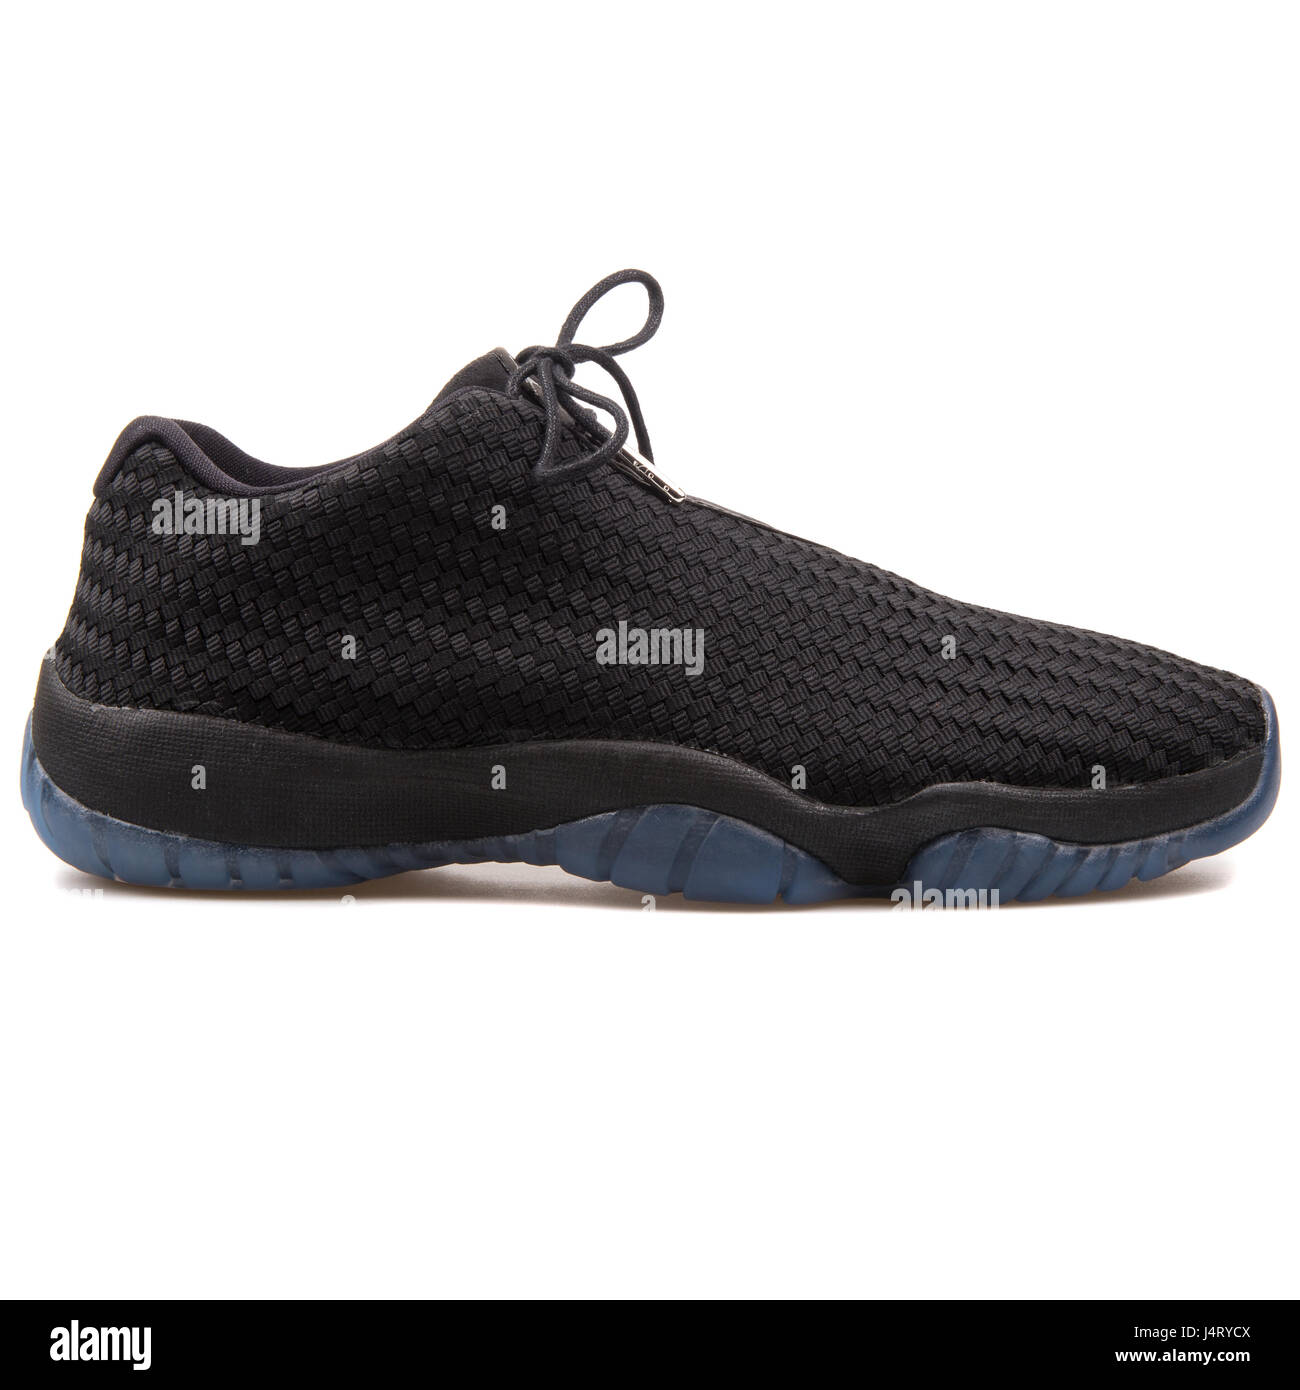 Nike Air Jordan Future Low Black Sneakers - 718948-005 Stock Photo - Alamy